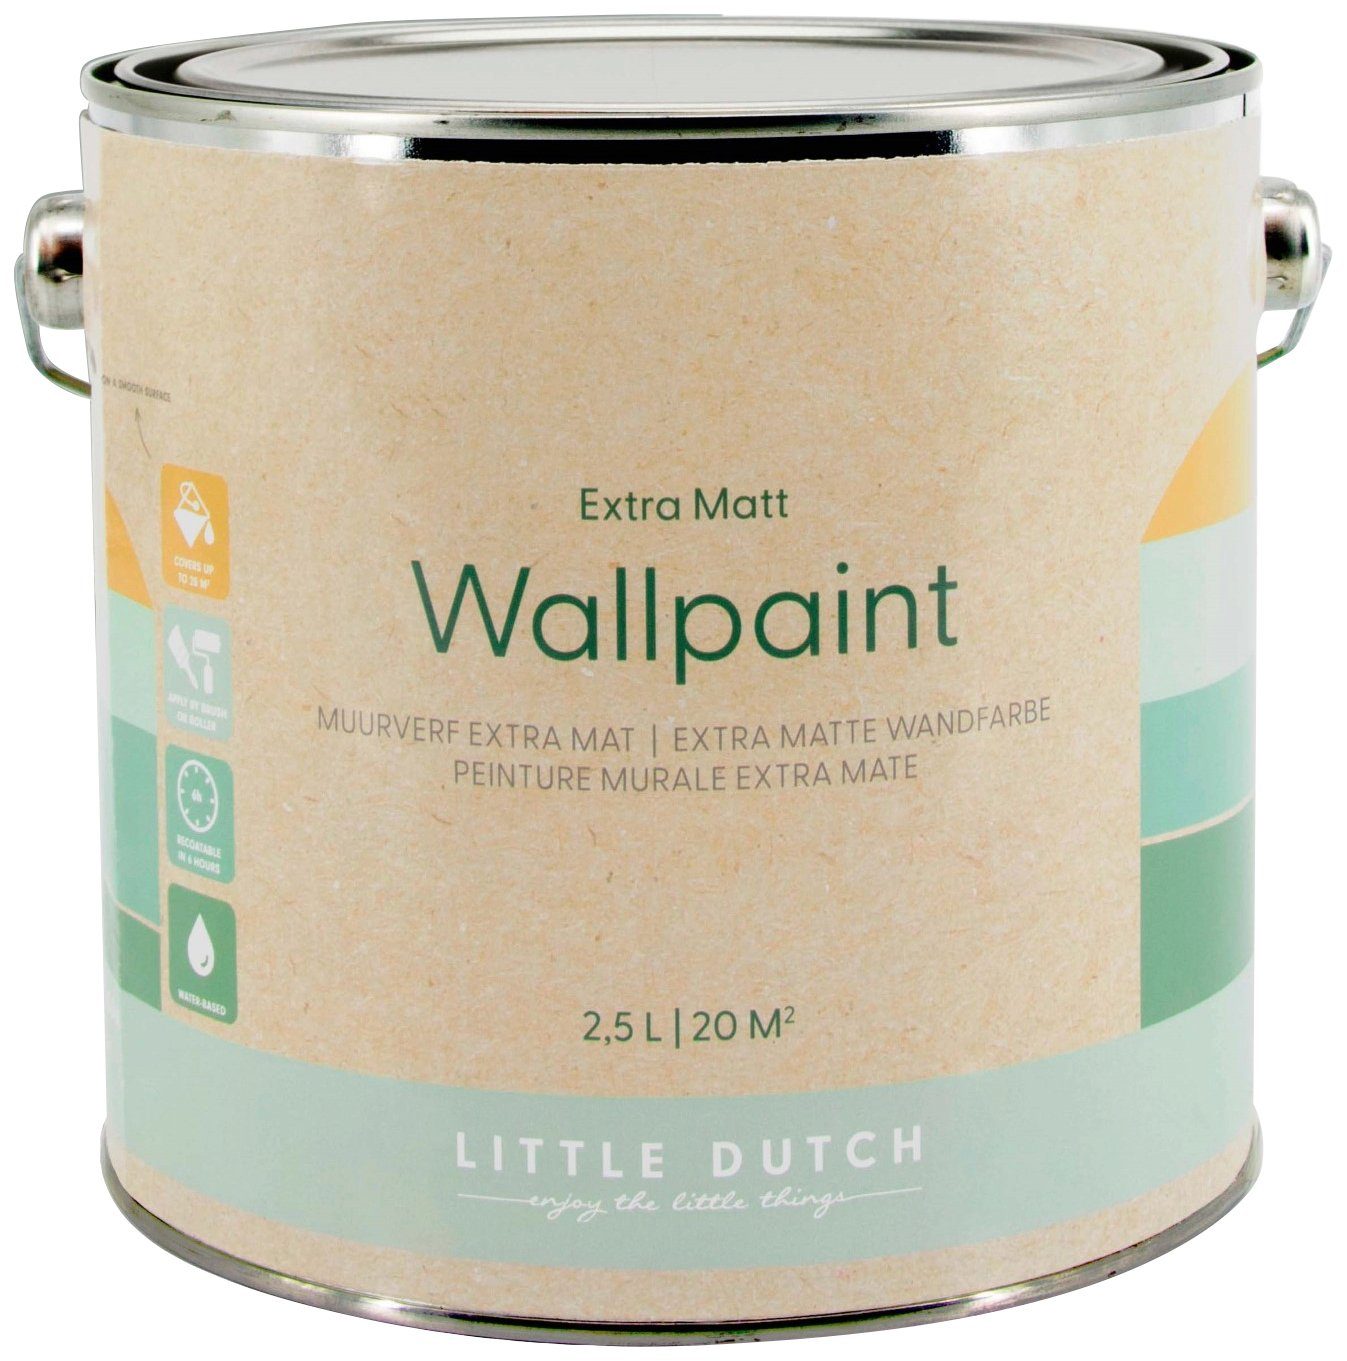 LITTLE DUTCH Wandfarbe Wallpaint, extra matt, hochdeckend und waschbeständig, für Kinderzimmer geeignet Dusty Grau